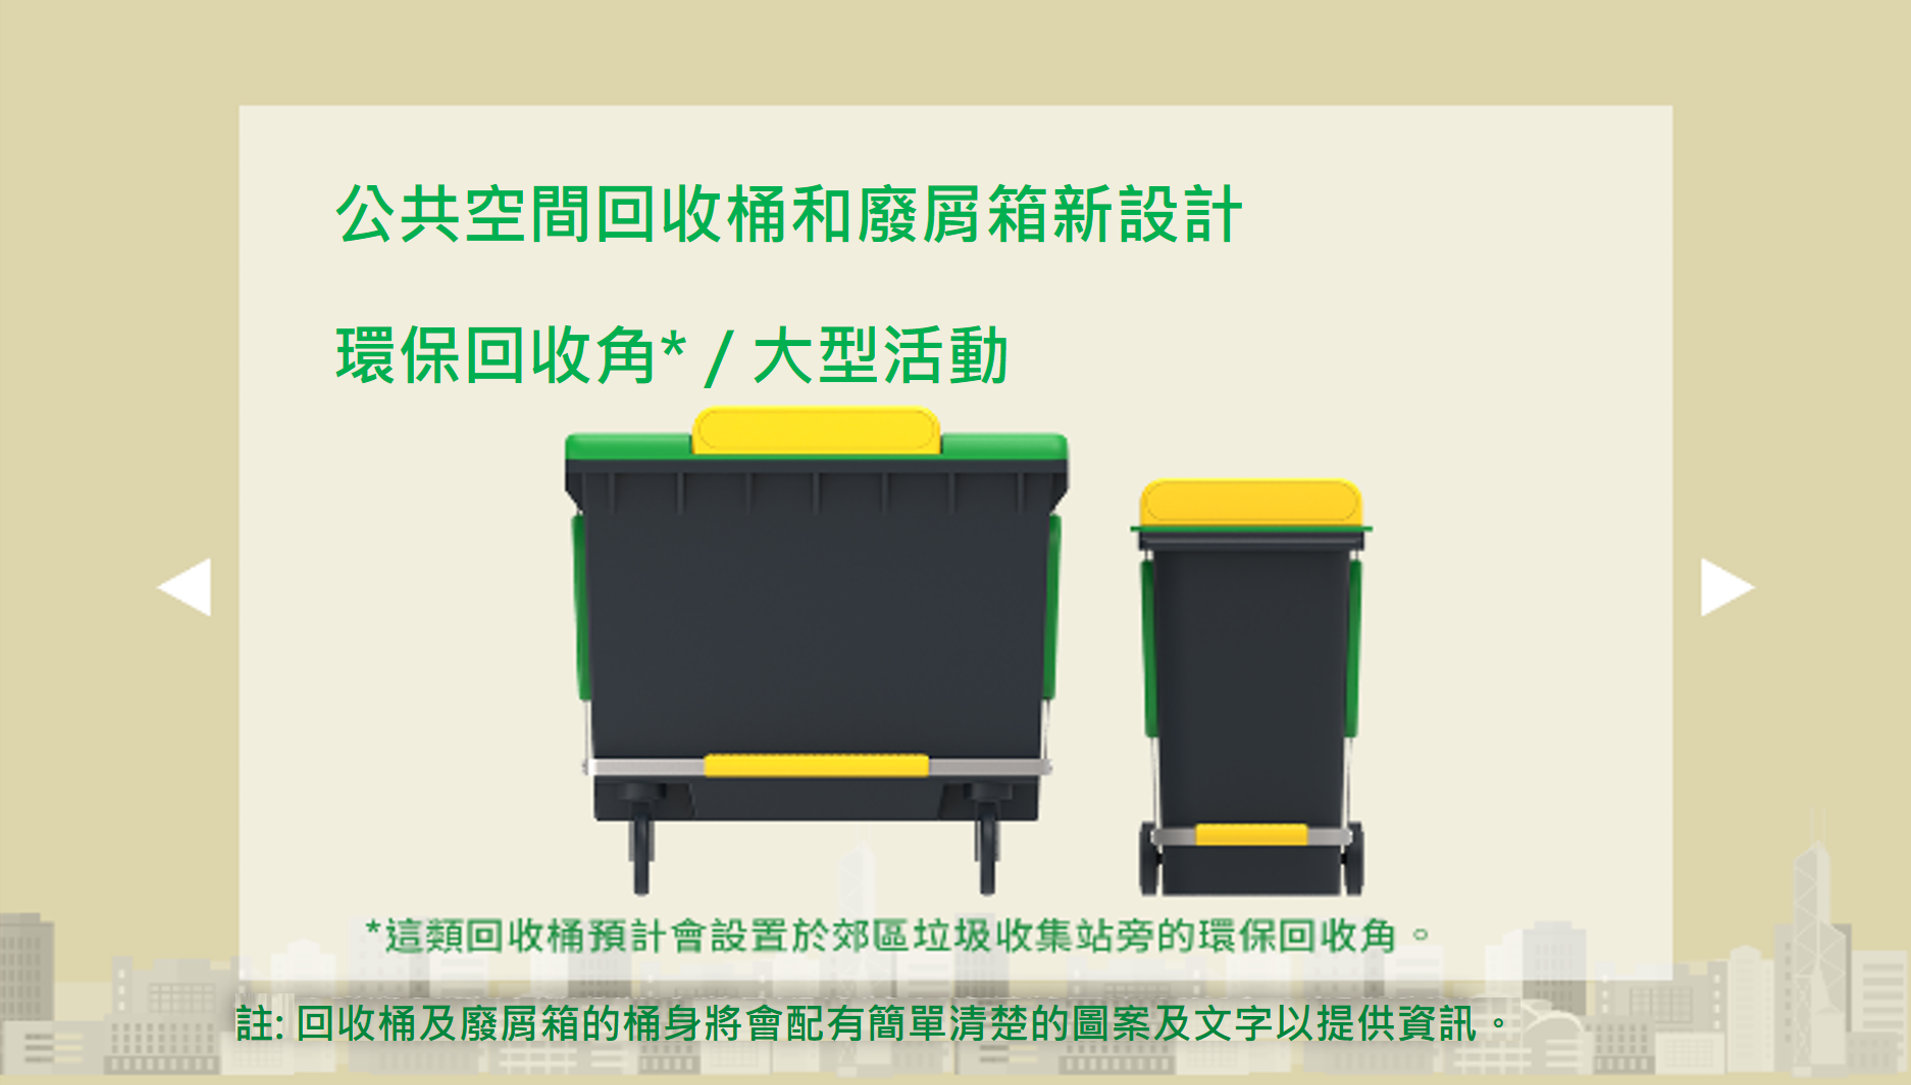 公共空間回收桶和廢屑箱新設計 - 環保回收角/大型活動